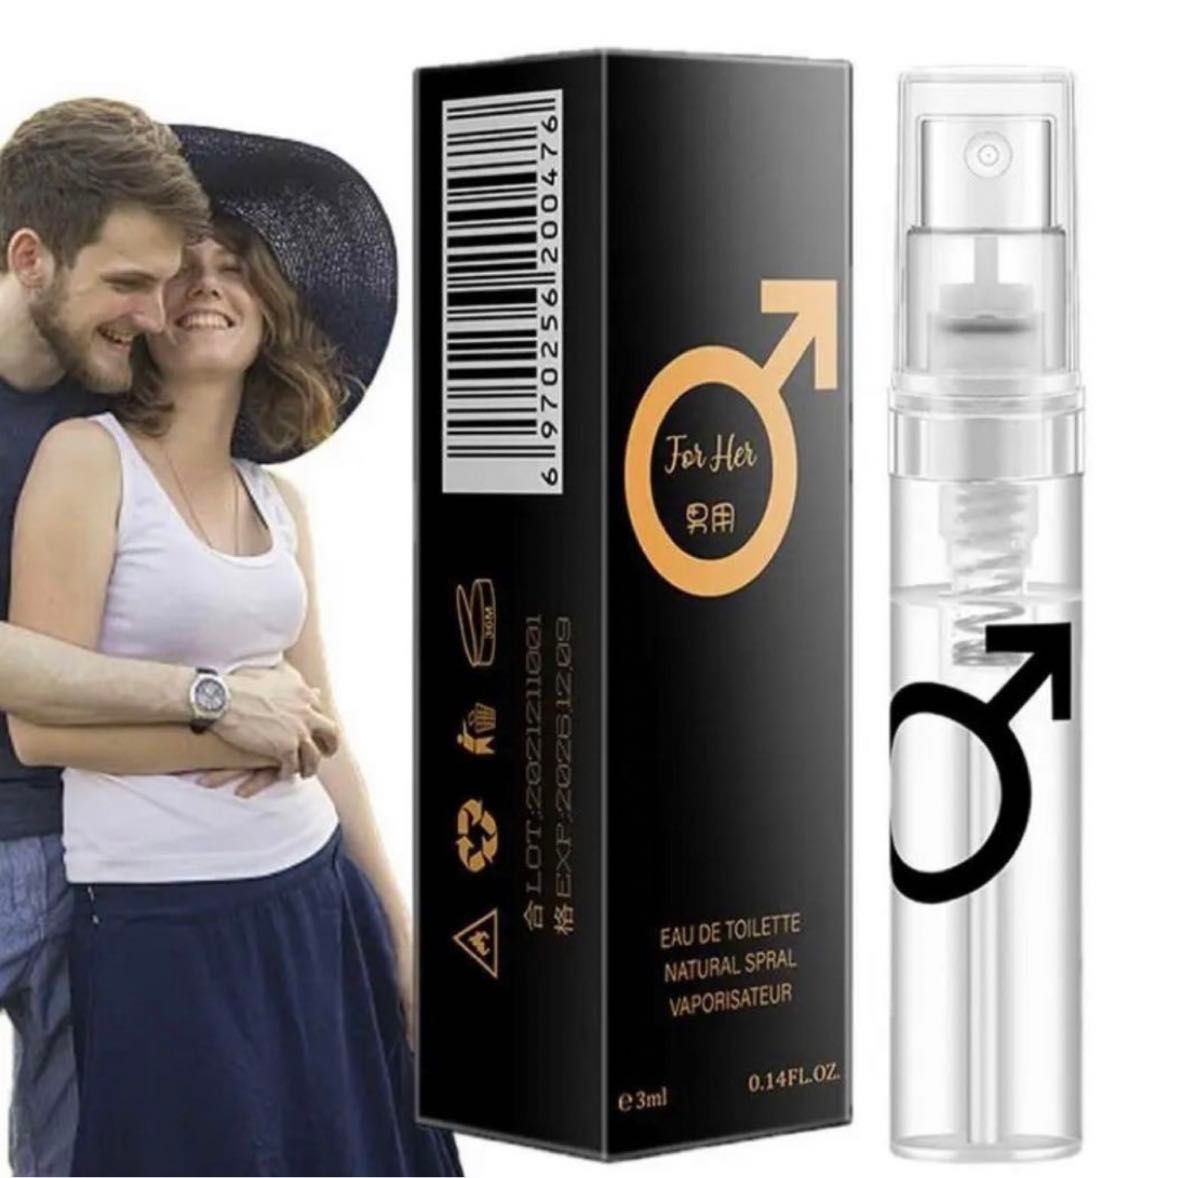 フェロモン香水男性用 異性を惹きつける香り男性用フレグランス香水3ml